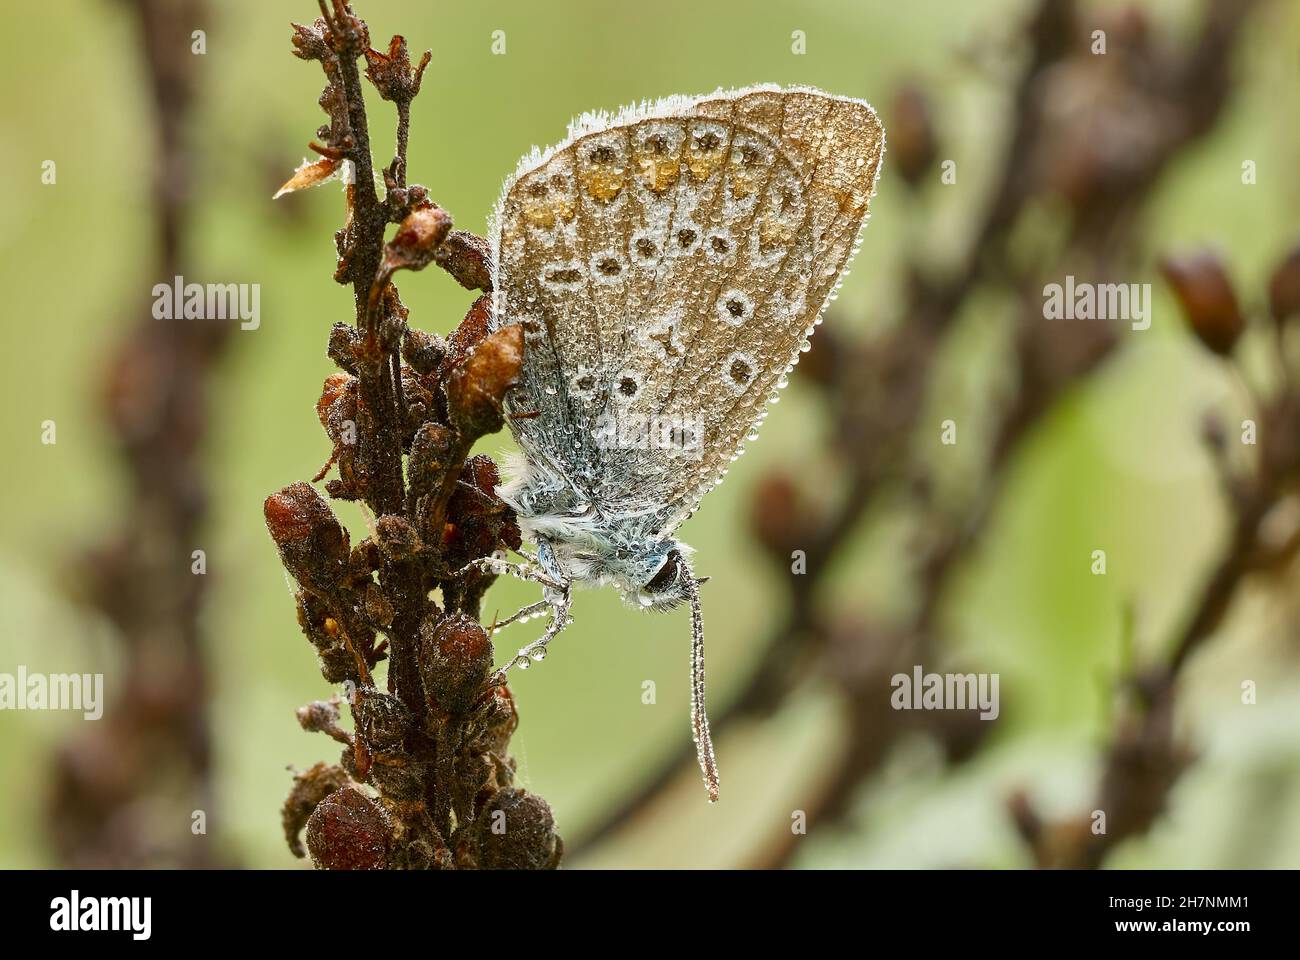 Gewöhnlicher Blauer Schmetterling Männchen im Morgengrauen. Mit Wassertropfen auf den Flügeln, Morgentau. Regungslos auf trockenem Gras sitzen. Gattungsart Polyommatus icarus. Stockfoto